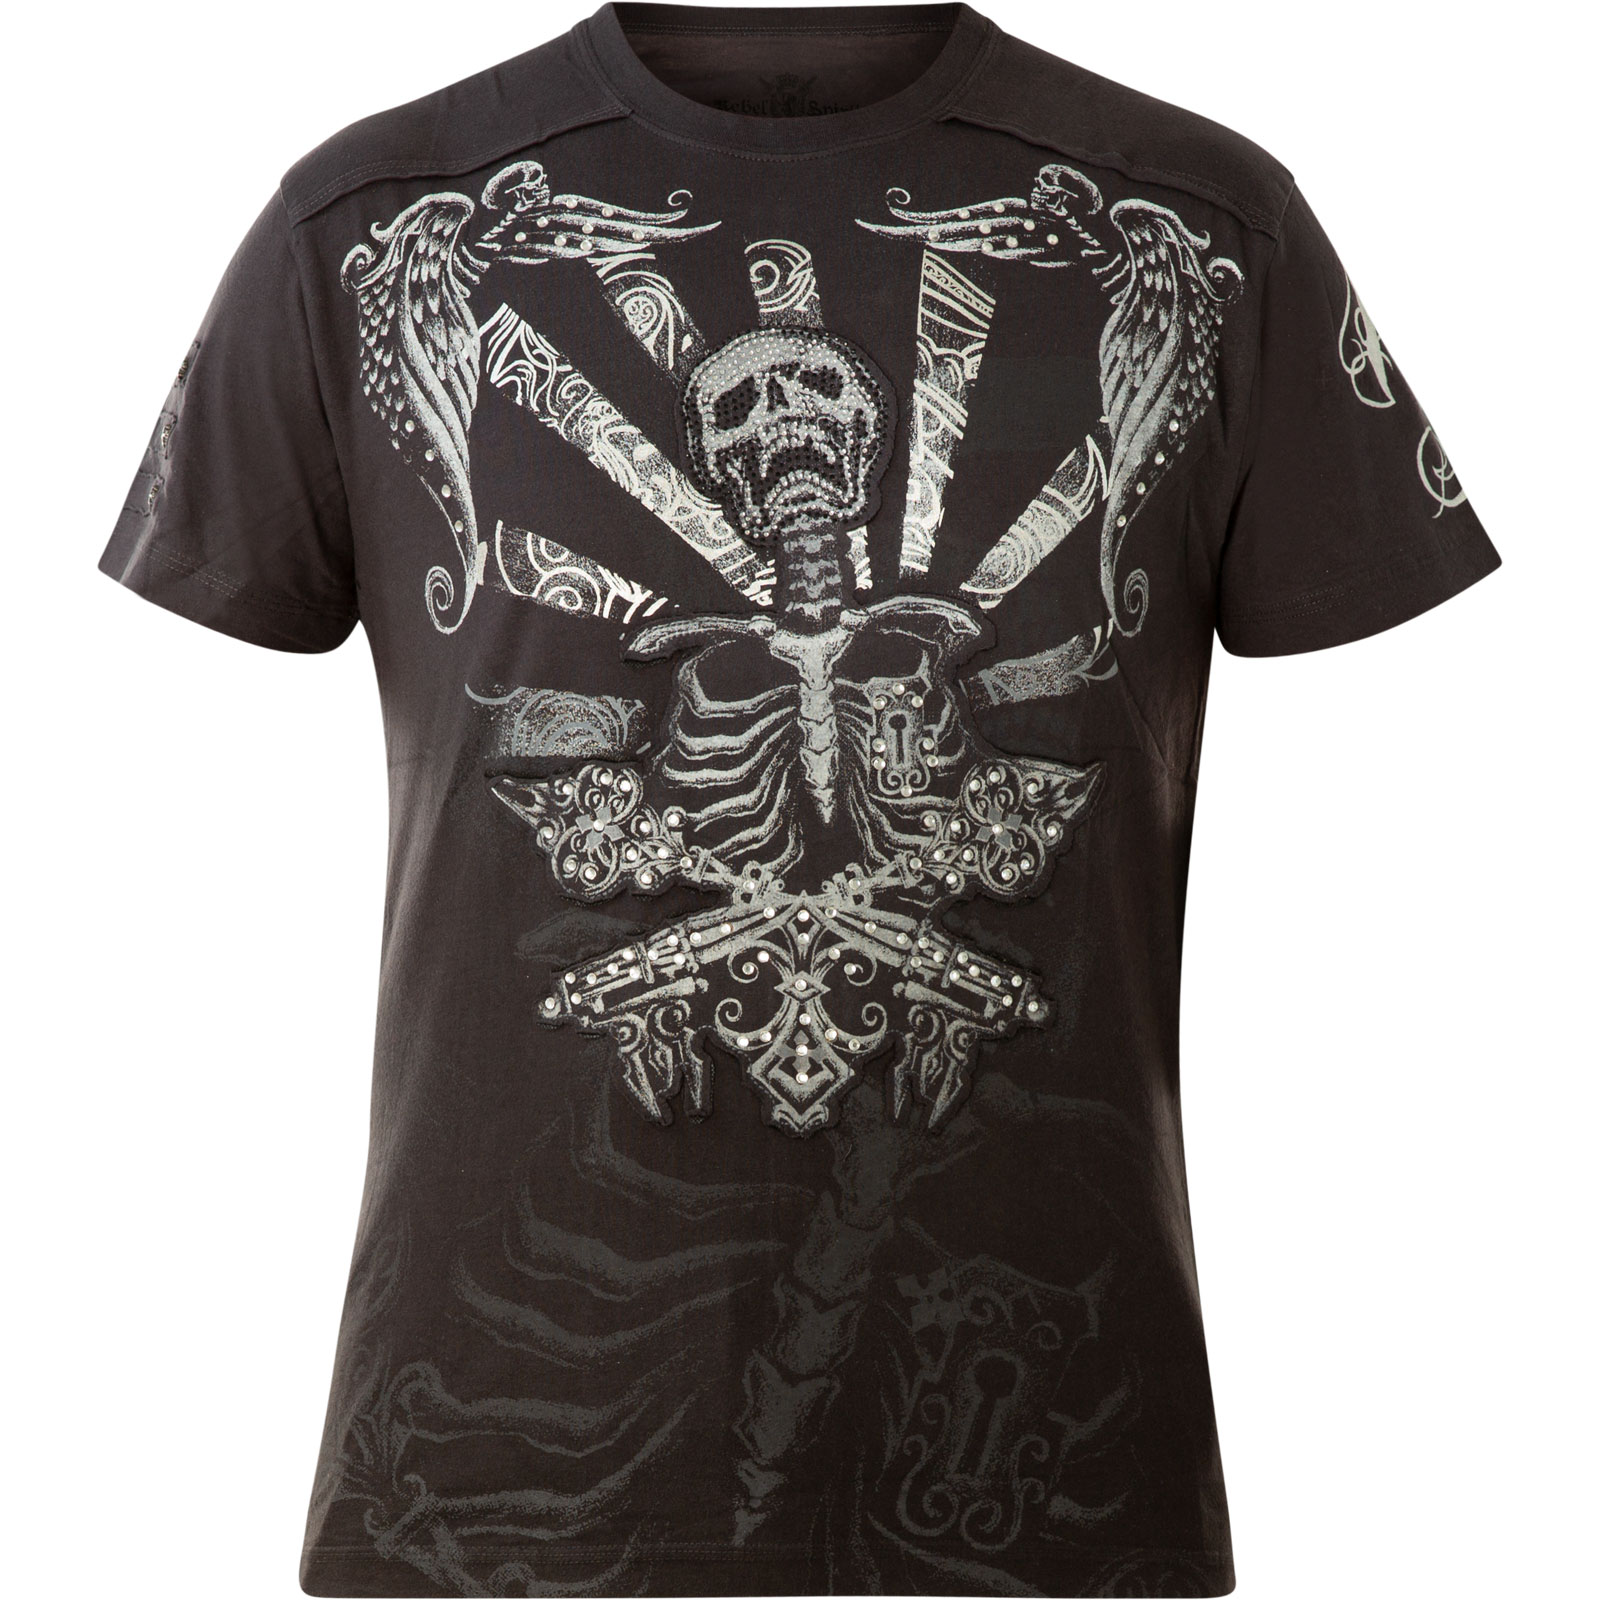 Rebel Spirit T-Shirt SSK111148 in dark grey with elaborate print ...